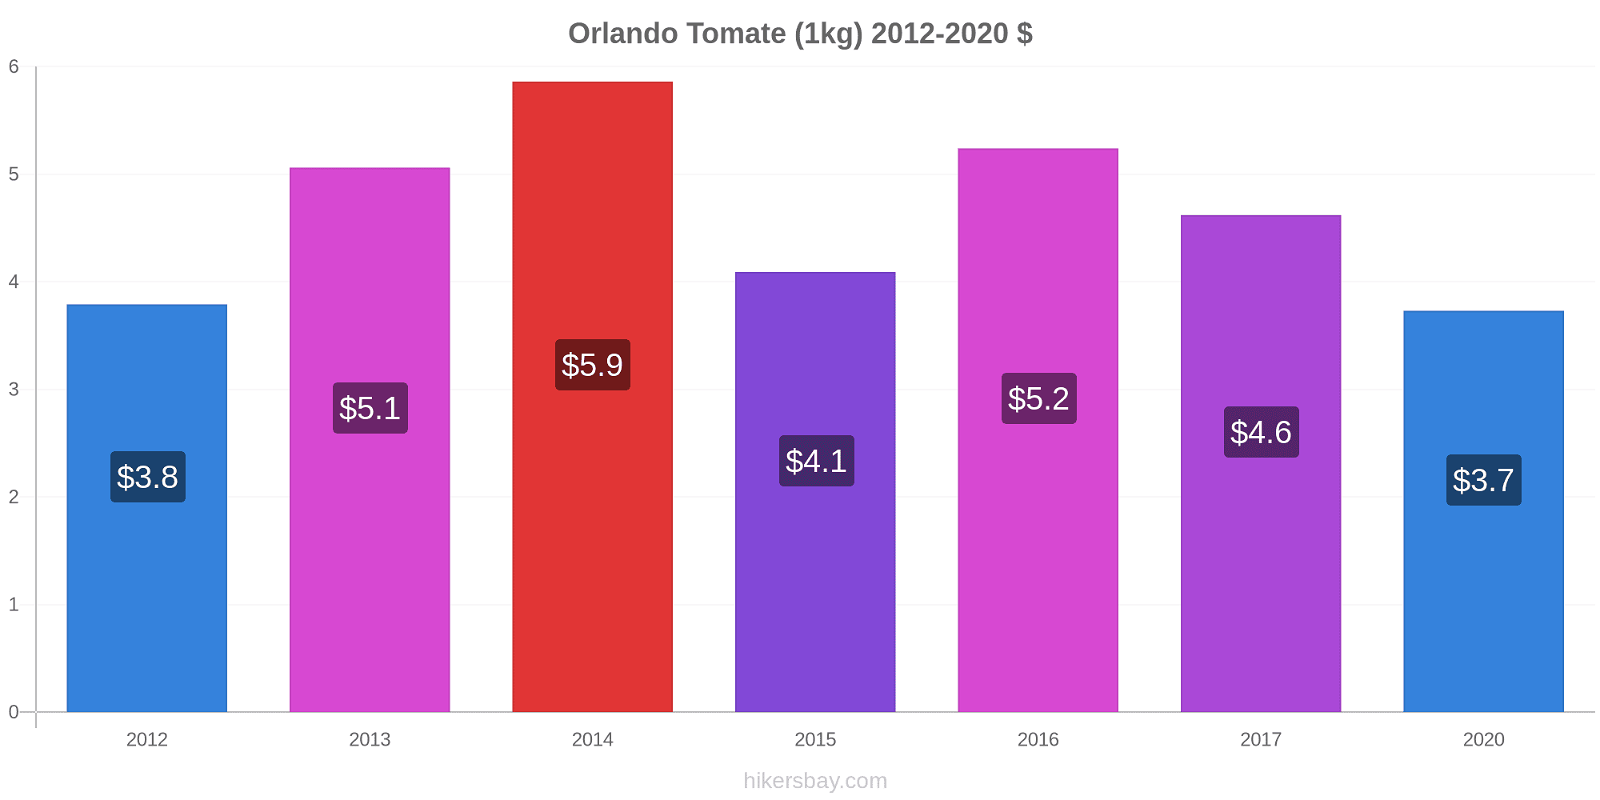 Orlando cambios de precios Tomate (1kg) hikersbay.com